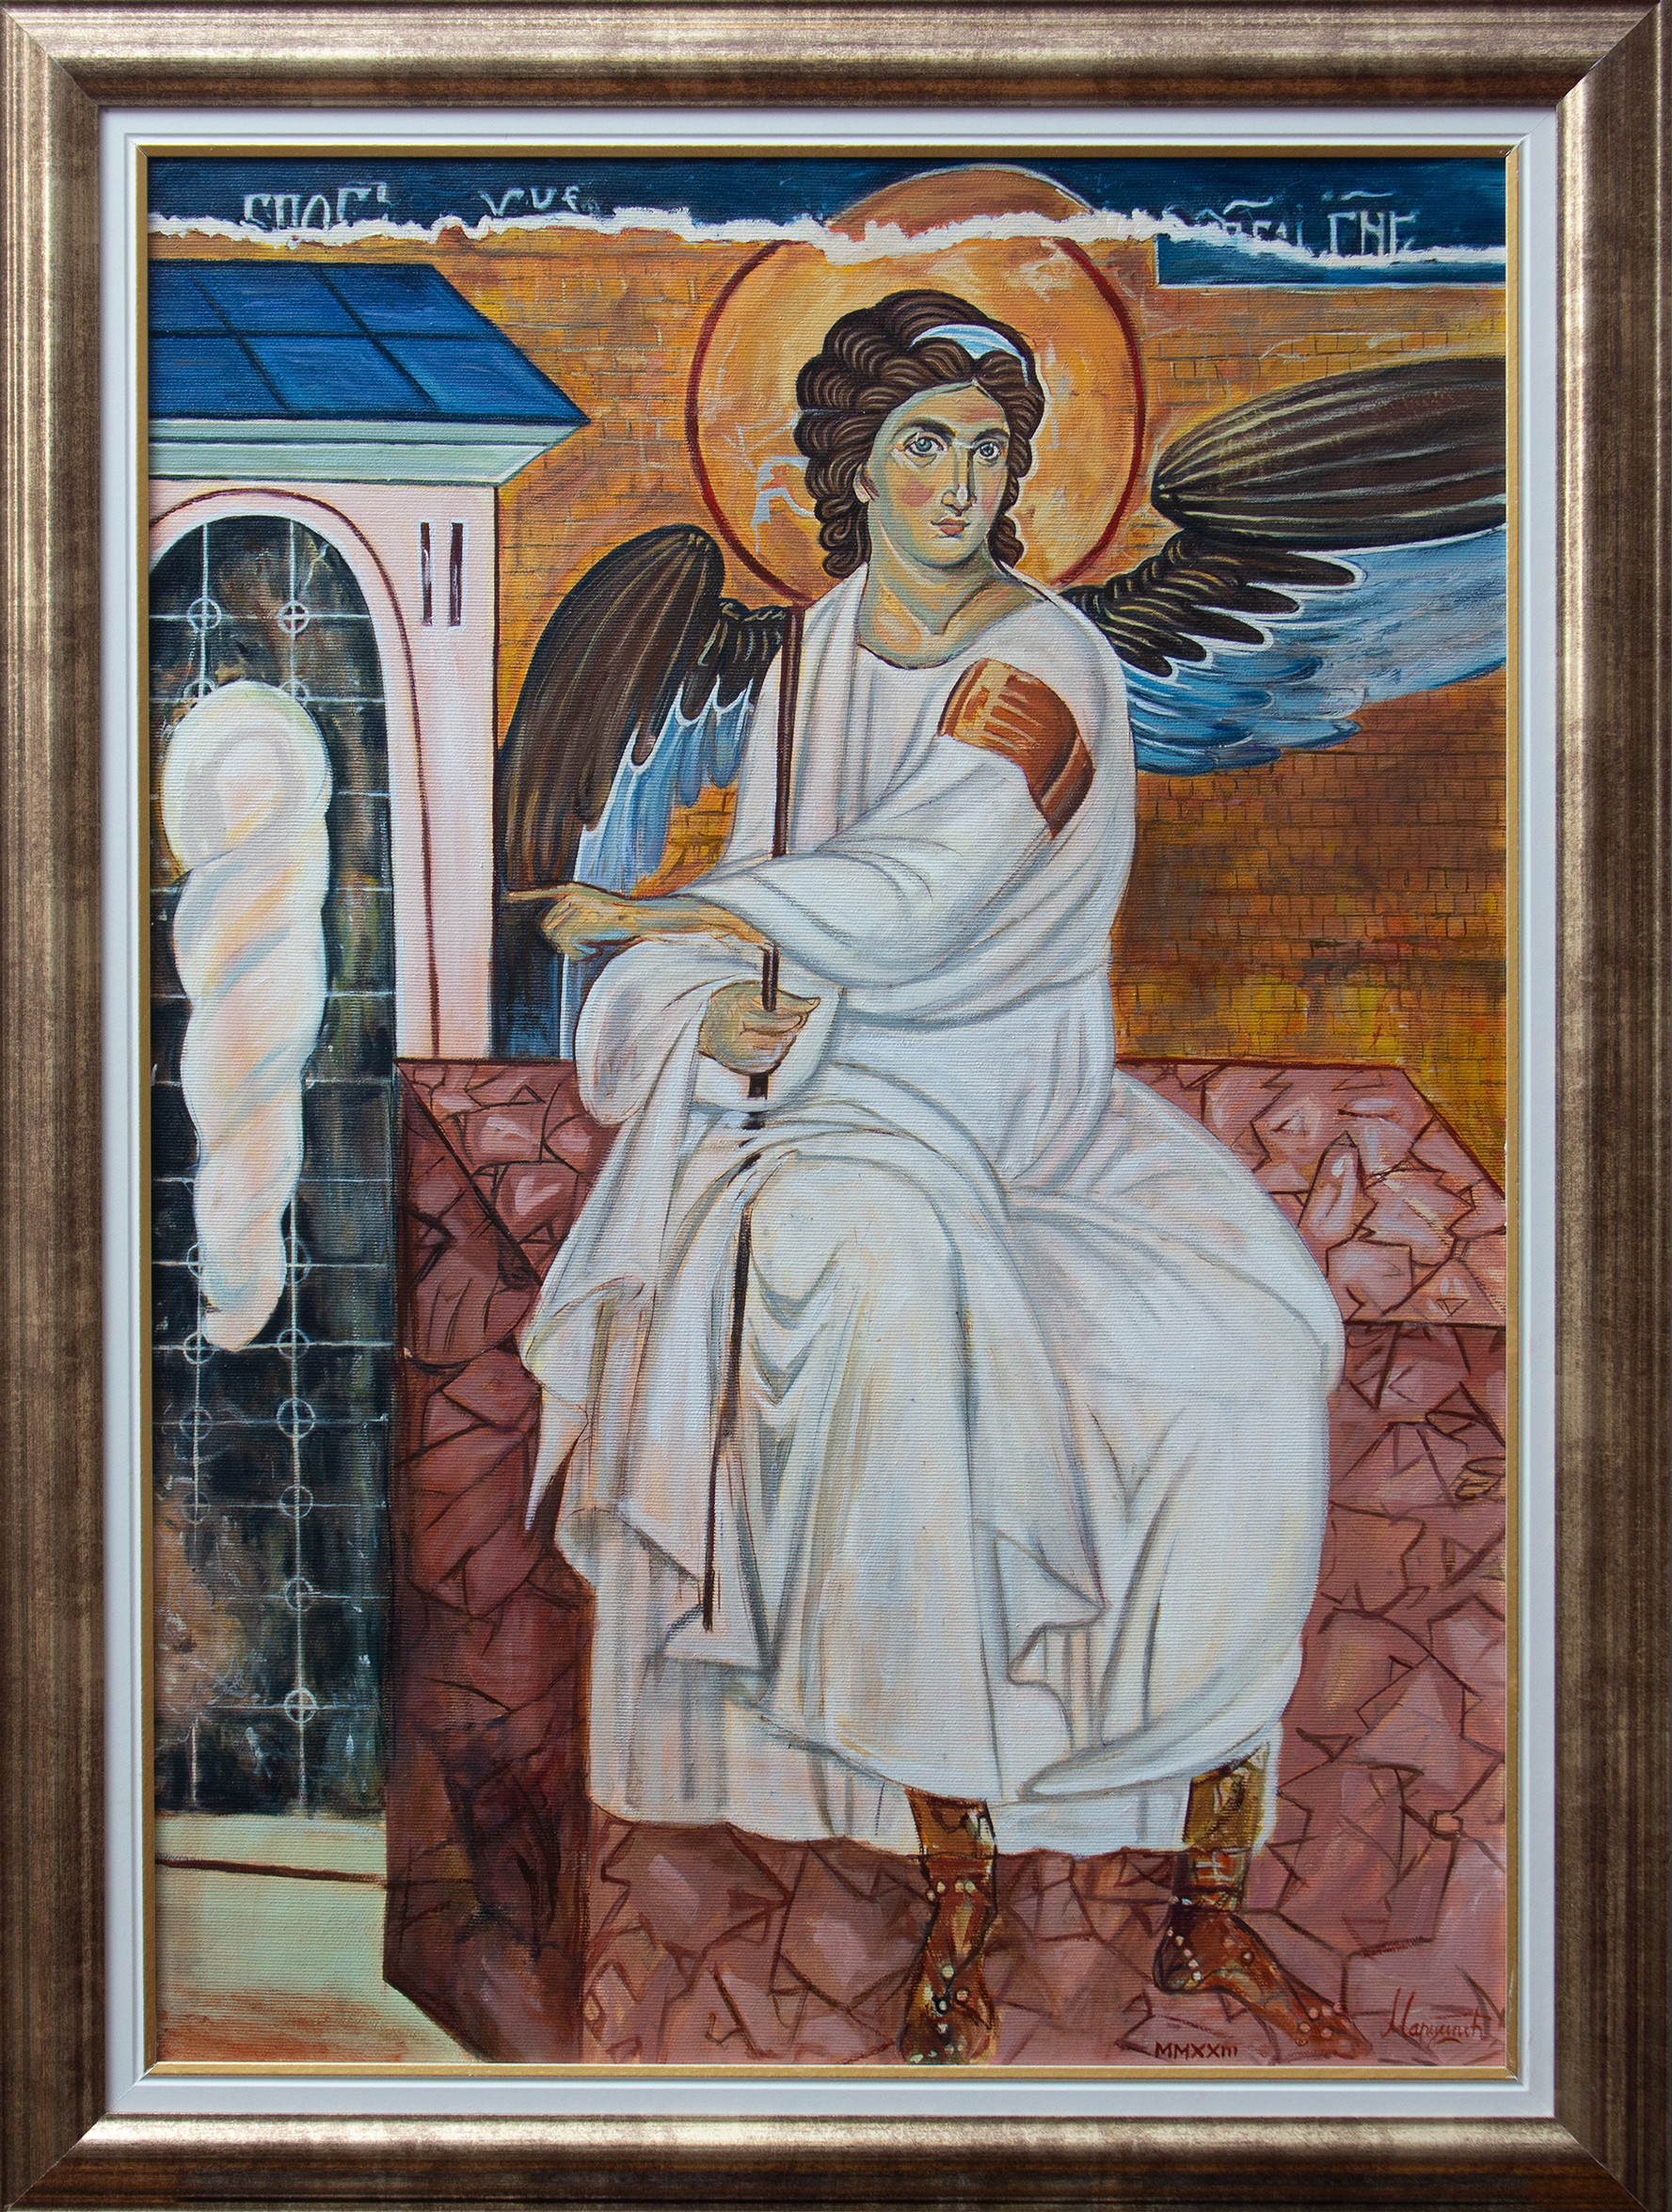 Beli Anđeo - Ulje na platnu - Umetnička slika - 81.5x61.5cm Uramljena Pravoslavna Ikona - umetnik Milica MARUŠIĆ